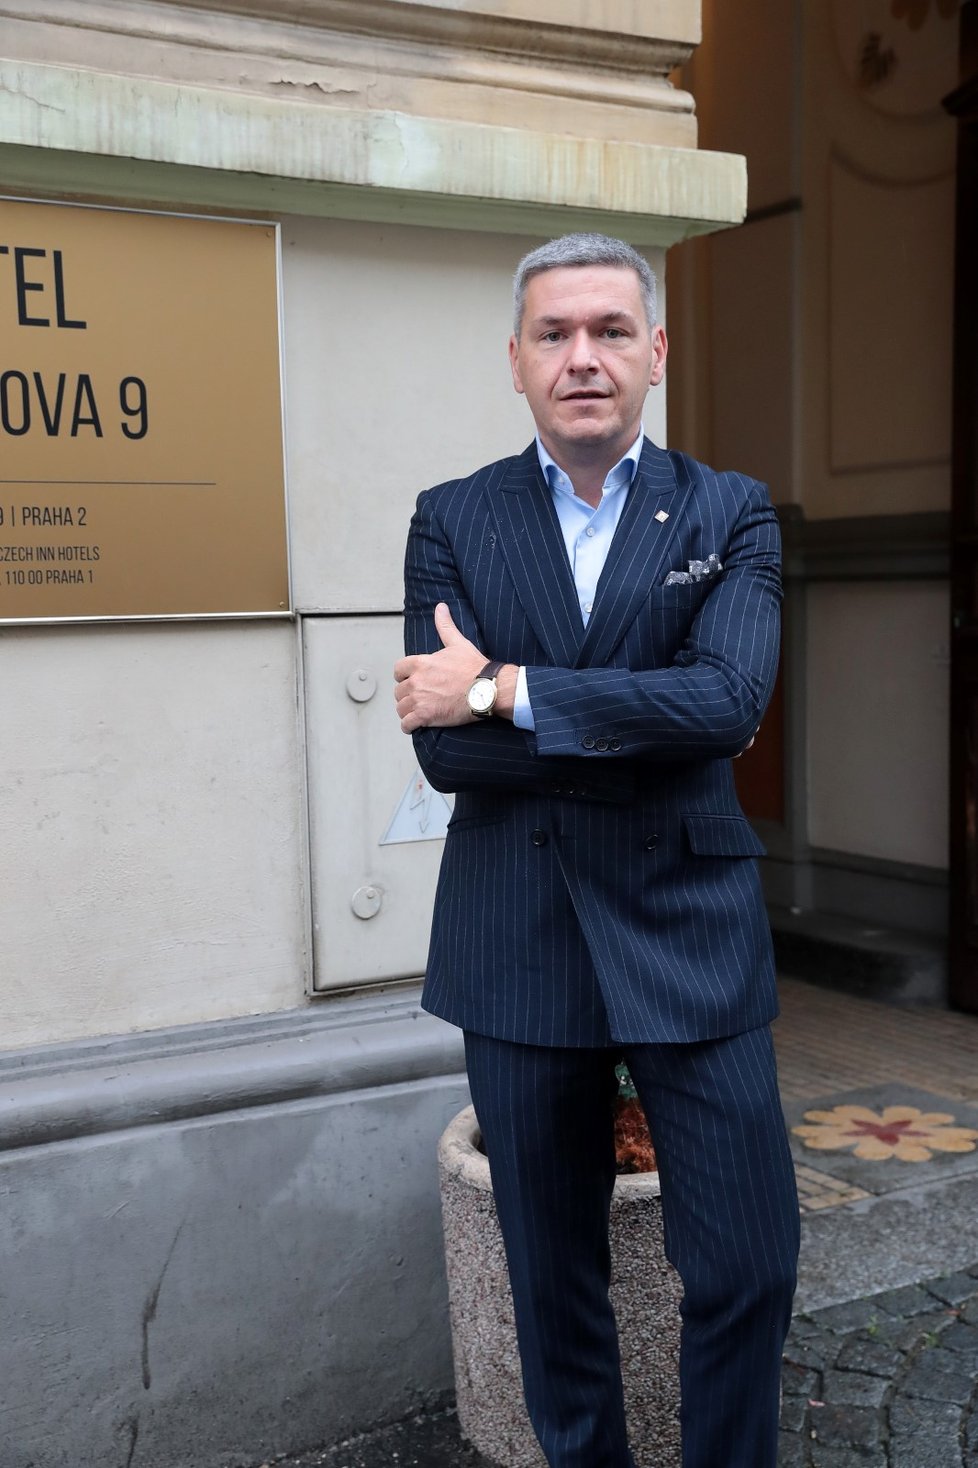 V Praze se otevřel první hotel, který je určený pouze pro lidi nakažené nemocí covid-19. Mohou v něm strávit karanténu aniž by se fyzicky potkali s někým z personálu. Na snímku je zakladatel sítě Czech Inn Hotels Jaroslav Svoboda, které tento hotel Patří.